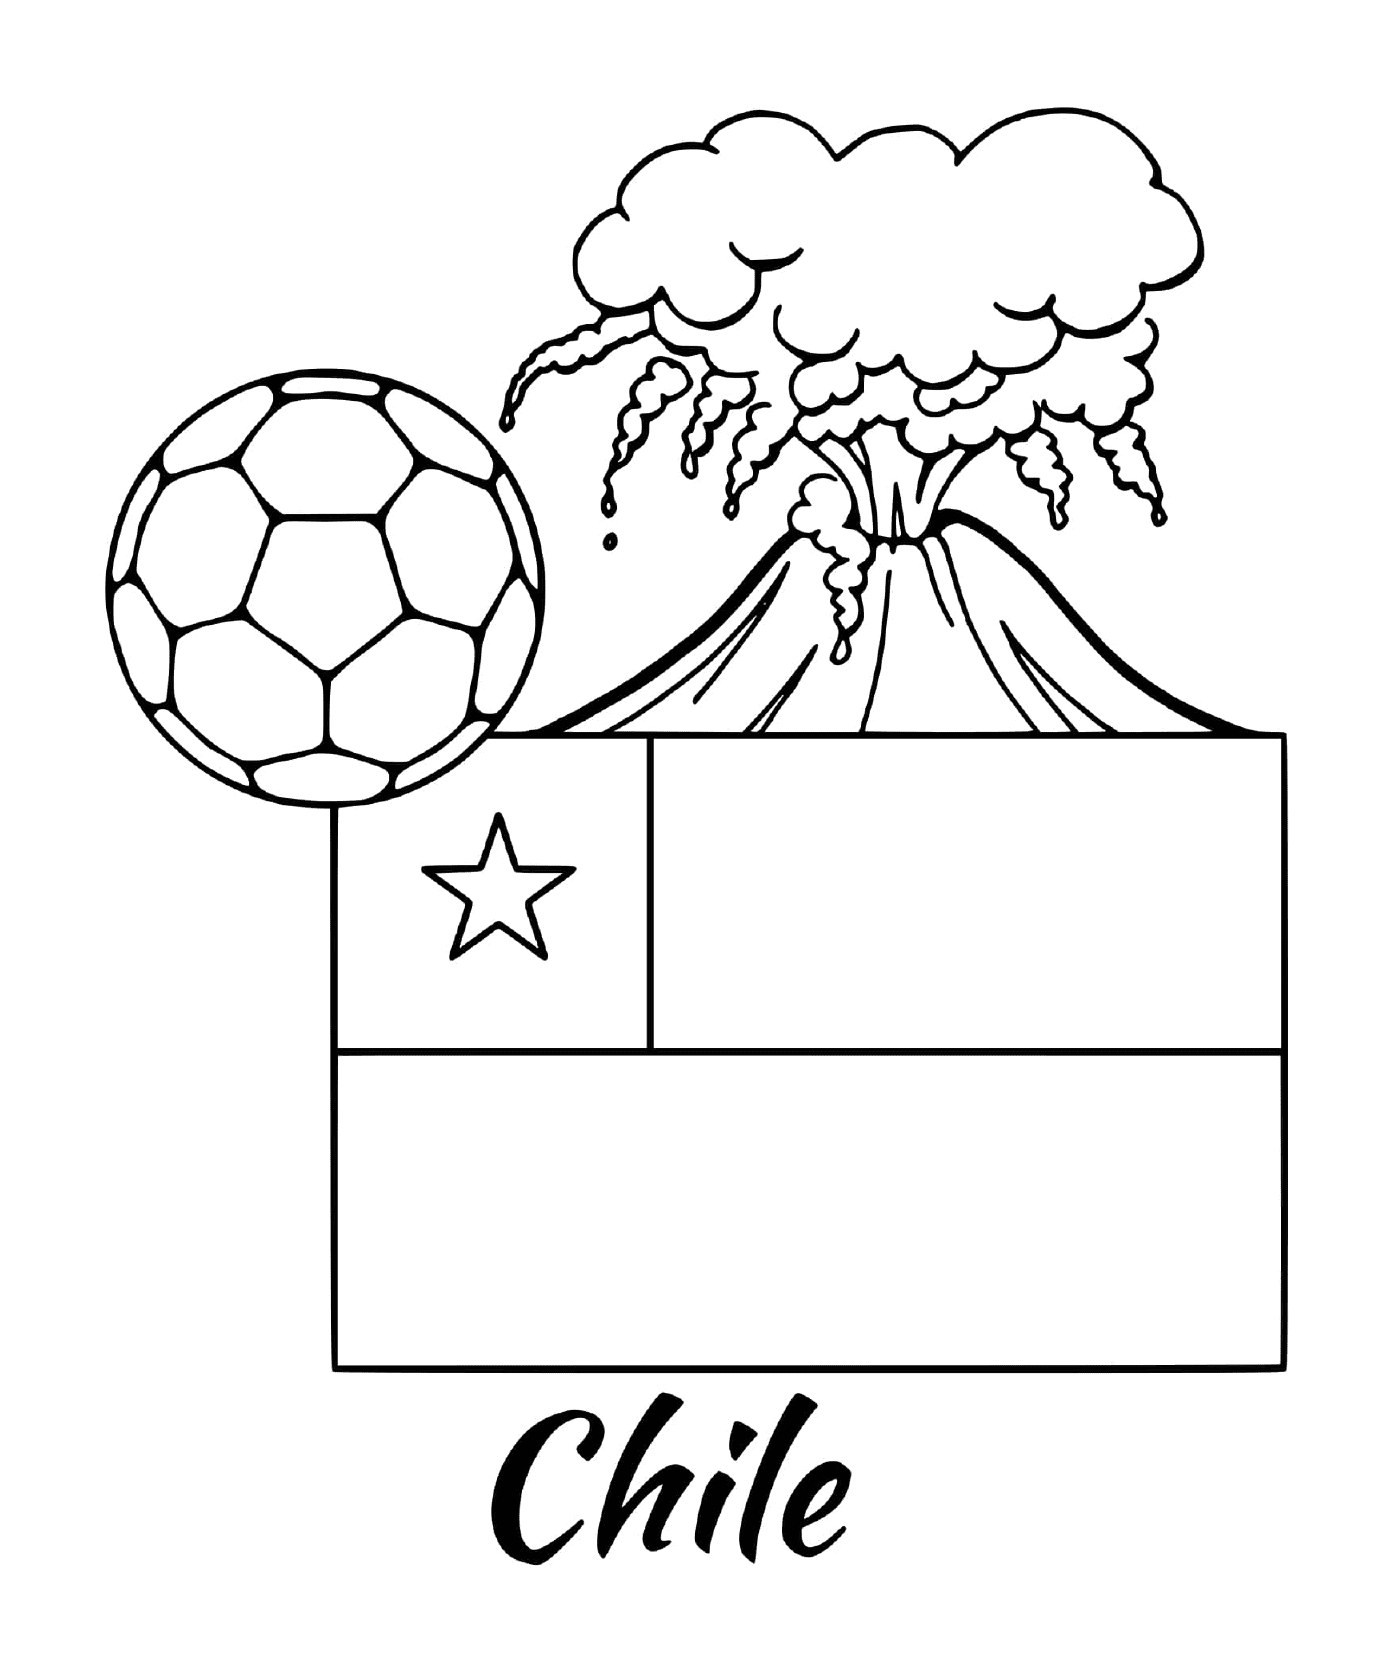  Bandeira do Chile, vulcão 